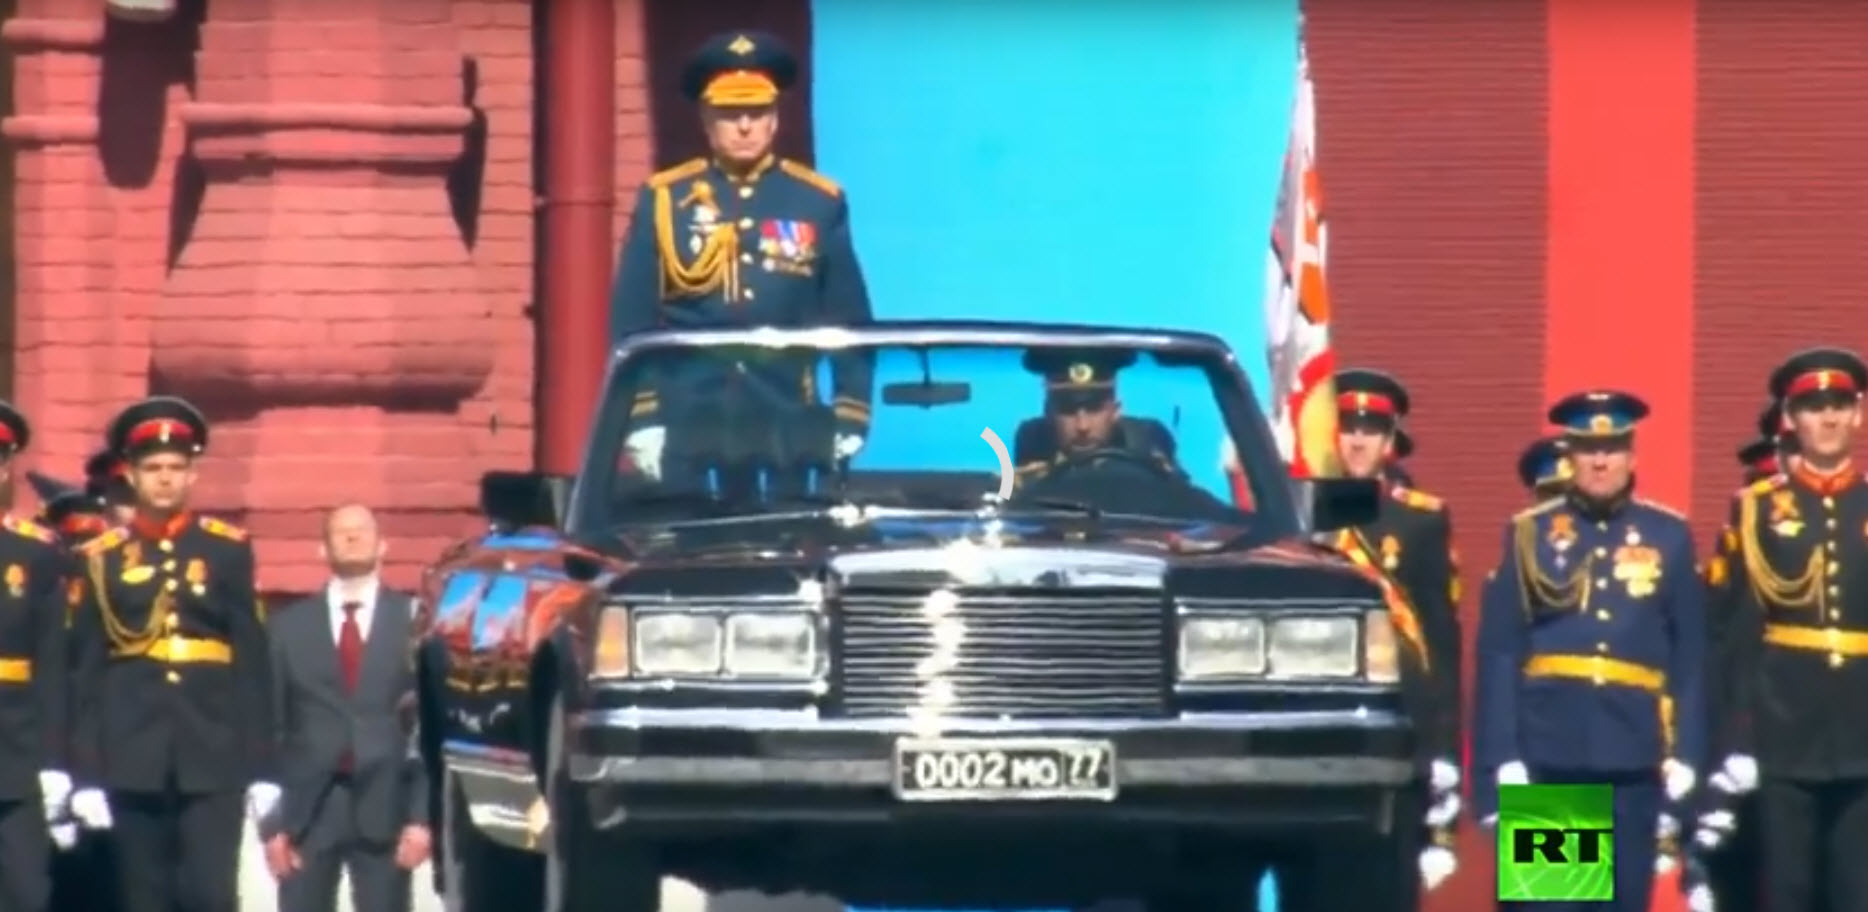   شاهد|| احتفال الإمبراطورية الروسية بقيادة بوتين بعيد نصرها